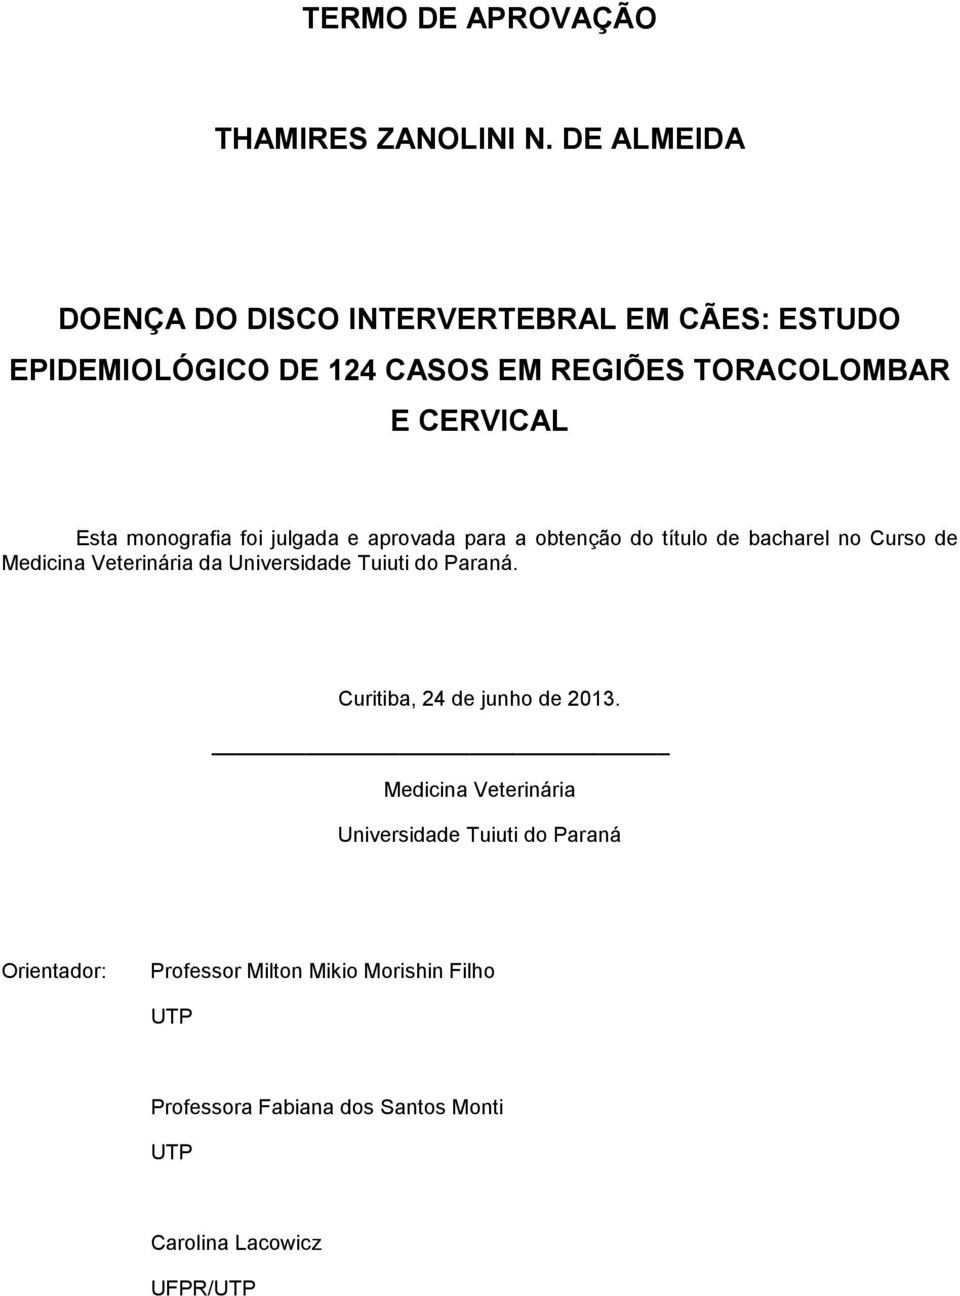 monografia foi julgada e aprovada para a obtenção do título de bacharel no Curso de Medicina Veterinária da Universidade Tuiuti